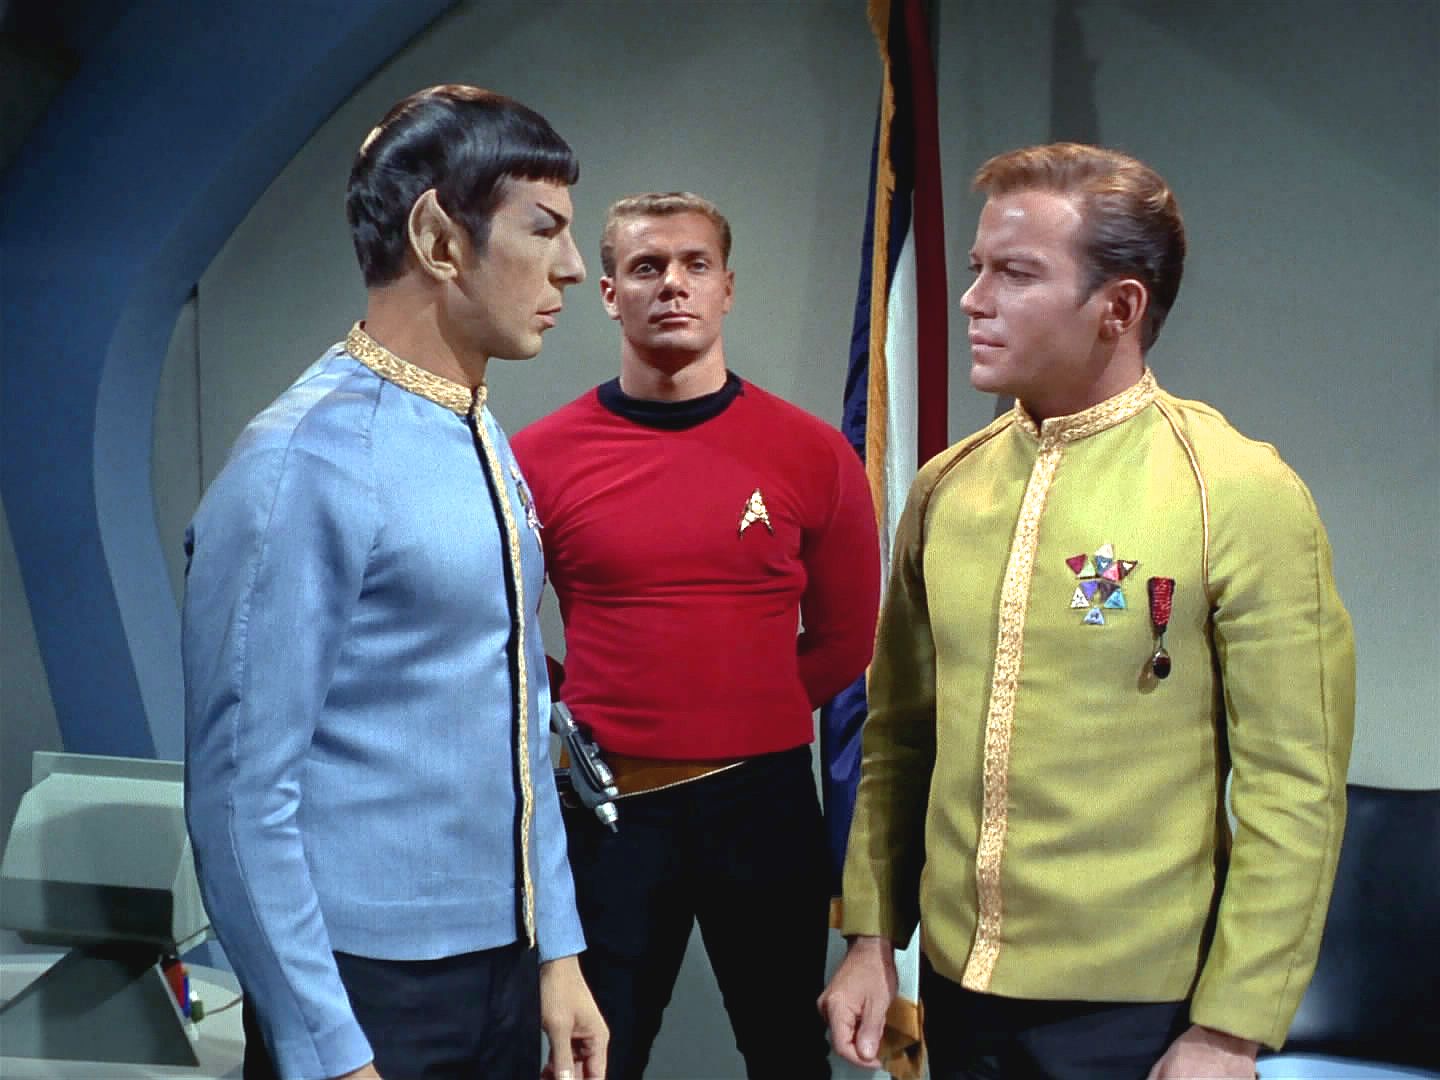 Komodor okamžitě vysílání přeruší a chce loď obrátit zpět k základně. Spock naléhavě žádá Kirka, aby jemu a zejména kapitánu Pikeovi umožnil doletět na Talos IV.